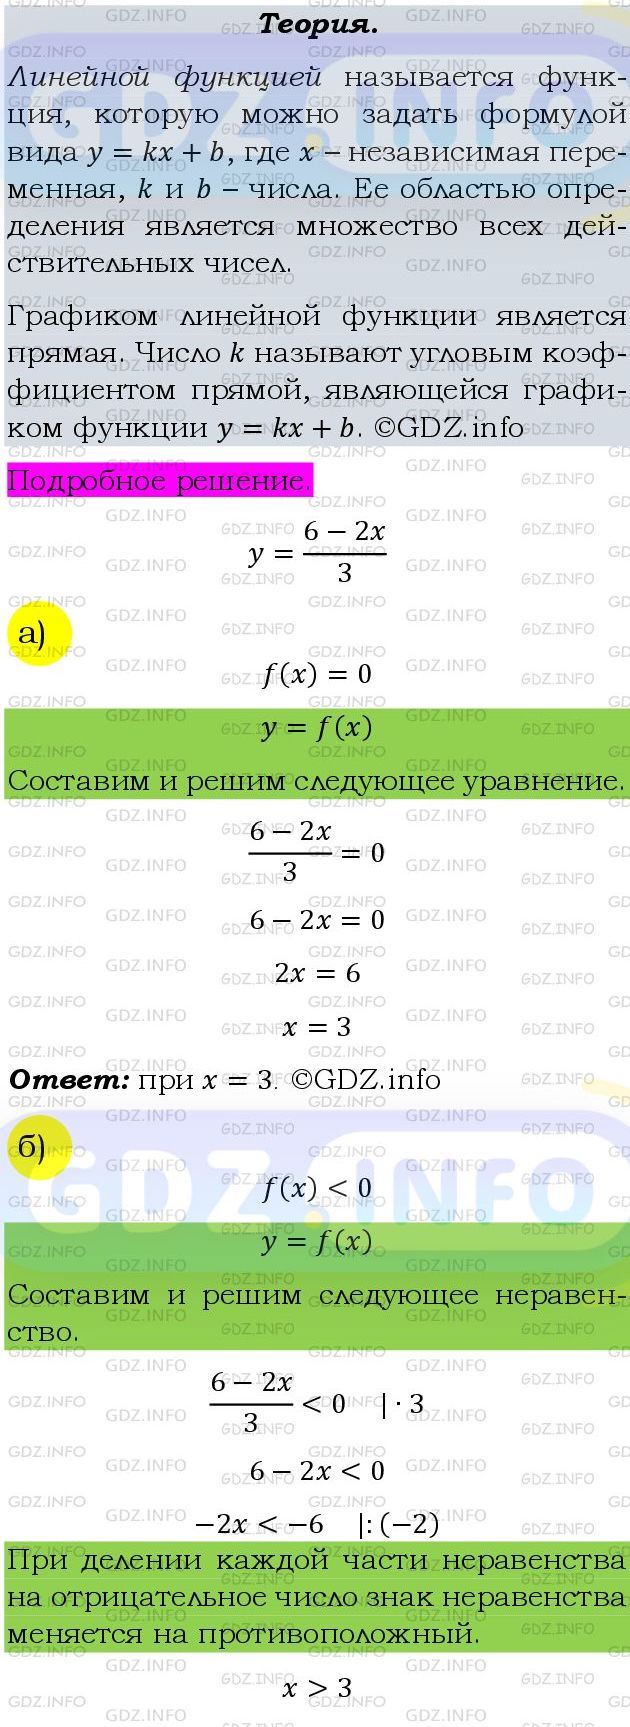 Фото подробного решения: Номер задания №820 из ГДЗ по Алгебре 9 класс: Макарычев Ю.Н.